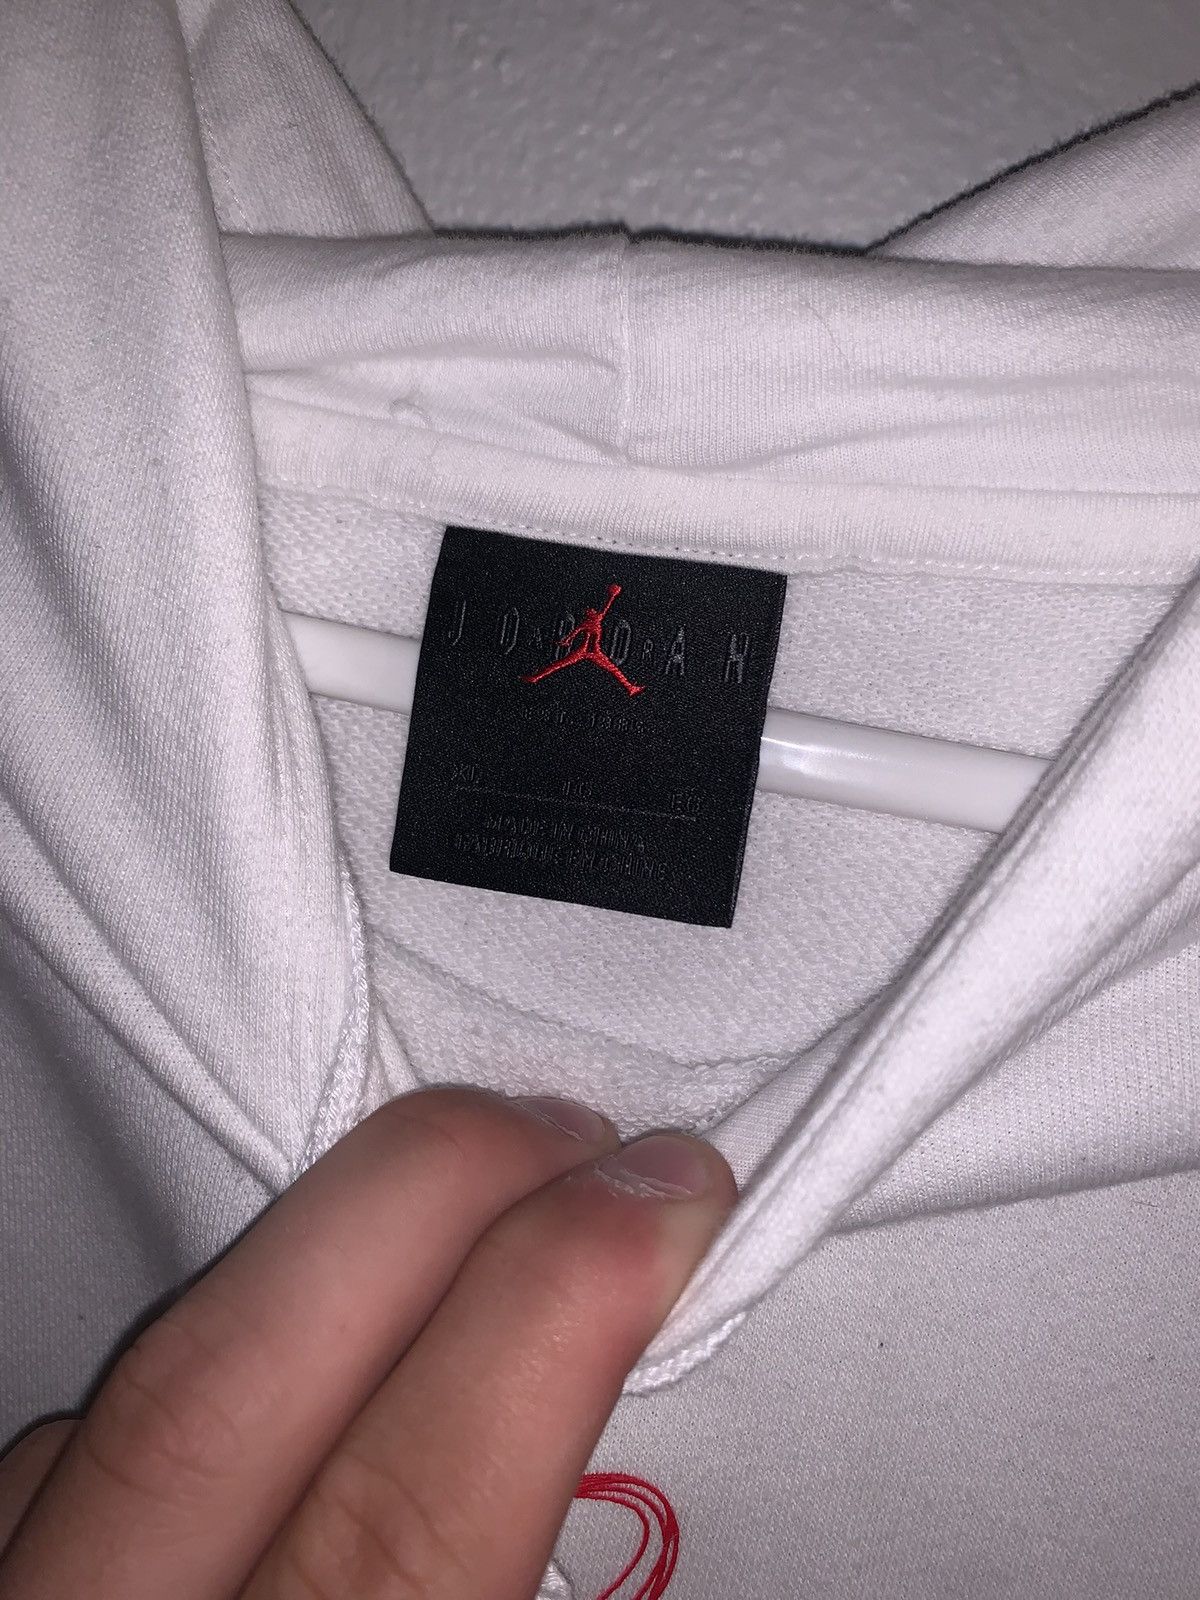 Nike Air Jordan White Hoodie Size US XL / EU 56 / 4 - 4 Thumbnail